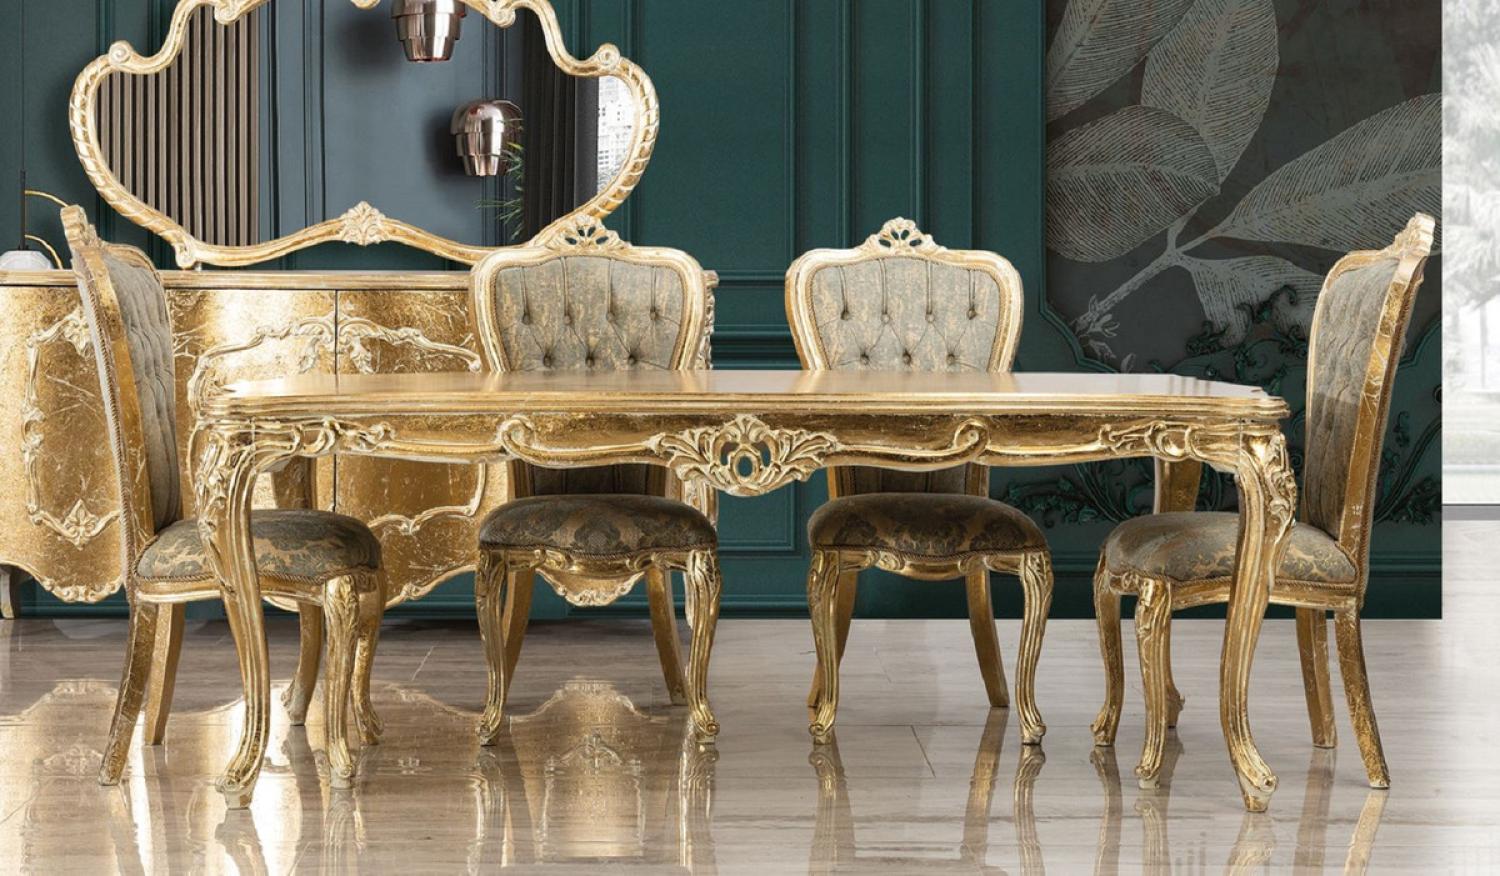 Casa Padrino Luxus Barock Esszimmer Set Grün / Antik Gold - 1 Barock Esstisch & 6 Barock Esszimmerstühle - Luxus Esszimmer Möbel im Barockstil - Prunkvolle Barock Esszimmer Möbel Bild 1